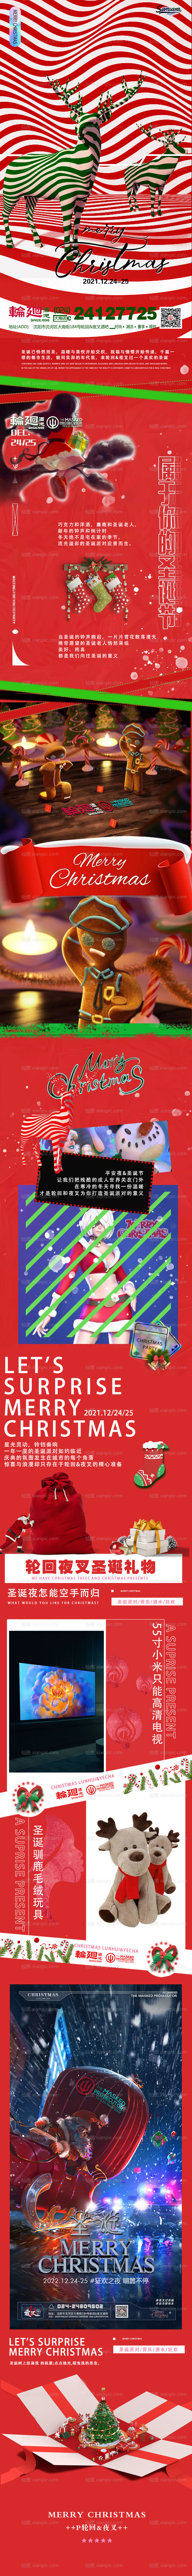 素材乐-酒吧ktv圣诞节促销宣传长图海报